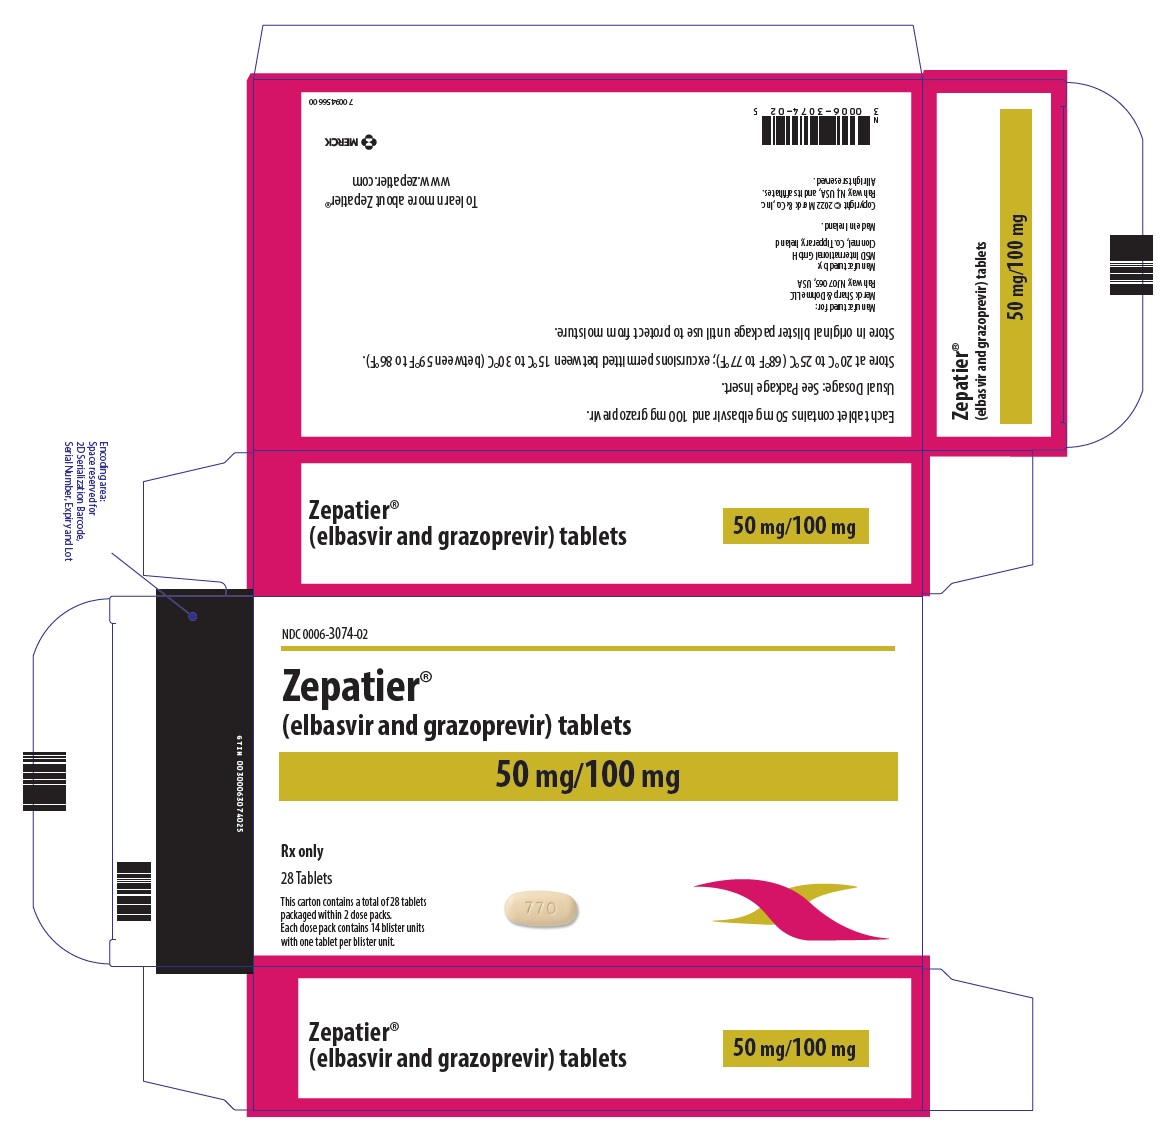 PRINCIPAL DISPLAY PANEL - 50 mg/100 mg 정제 복용 팩 포장